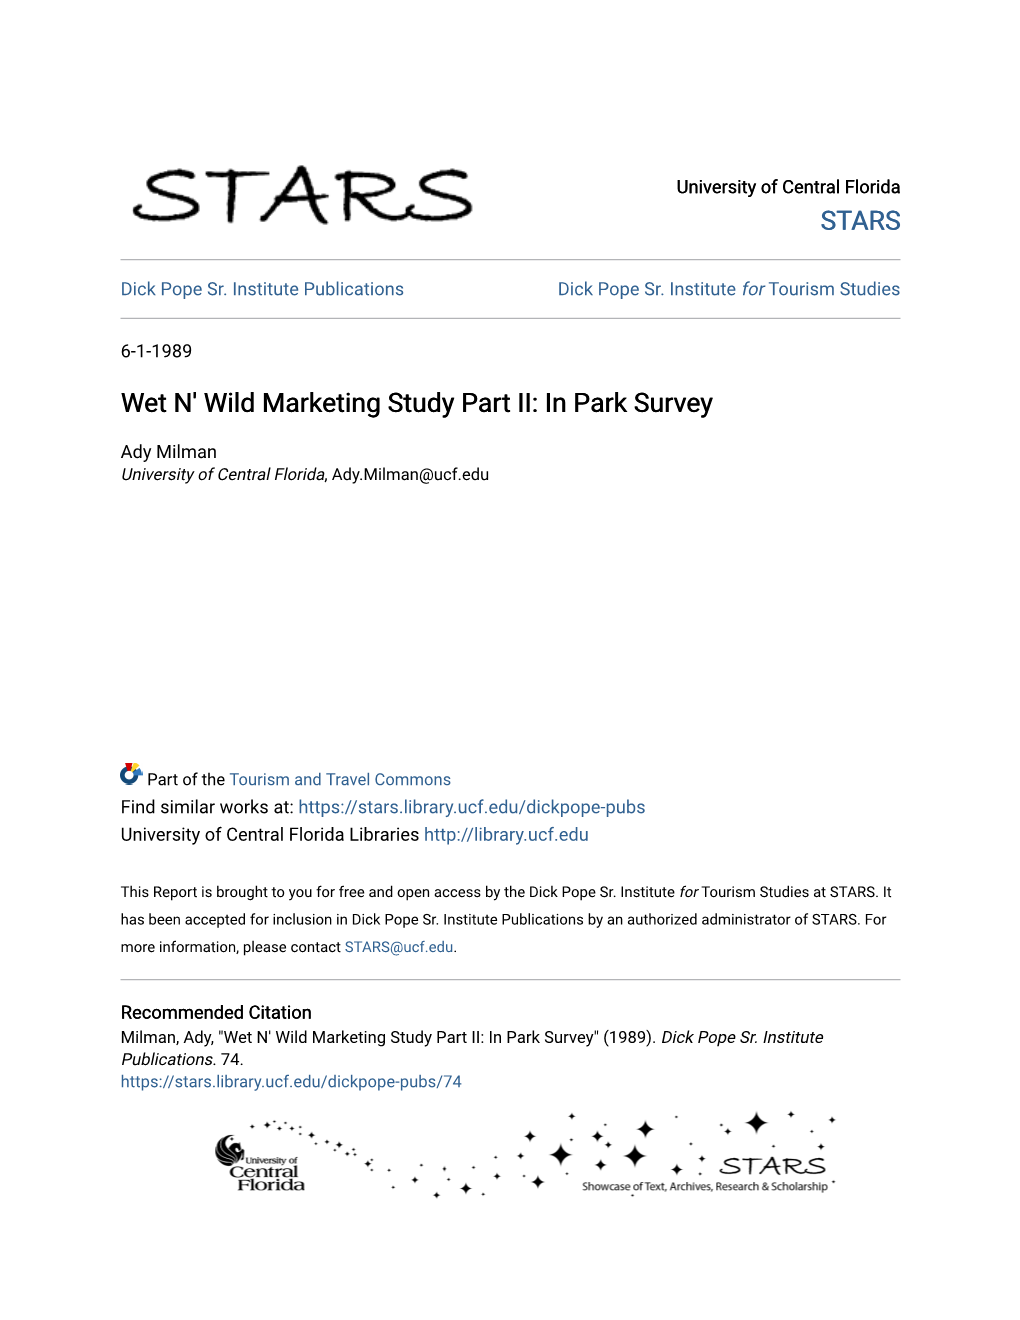 Wet N' Wild Marketing Study Part II: in Park Survey